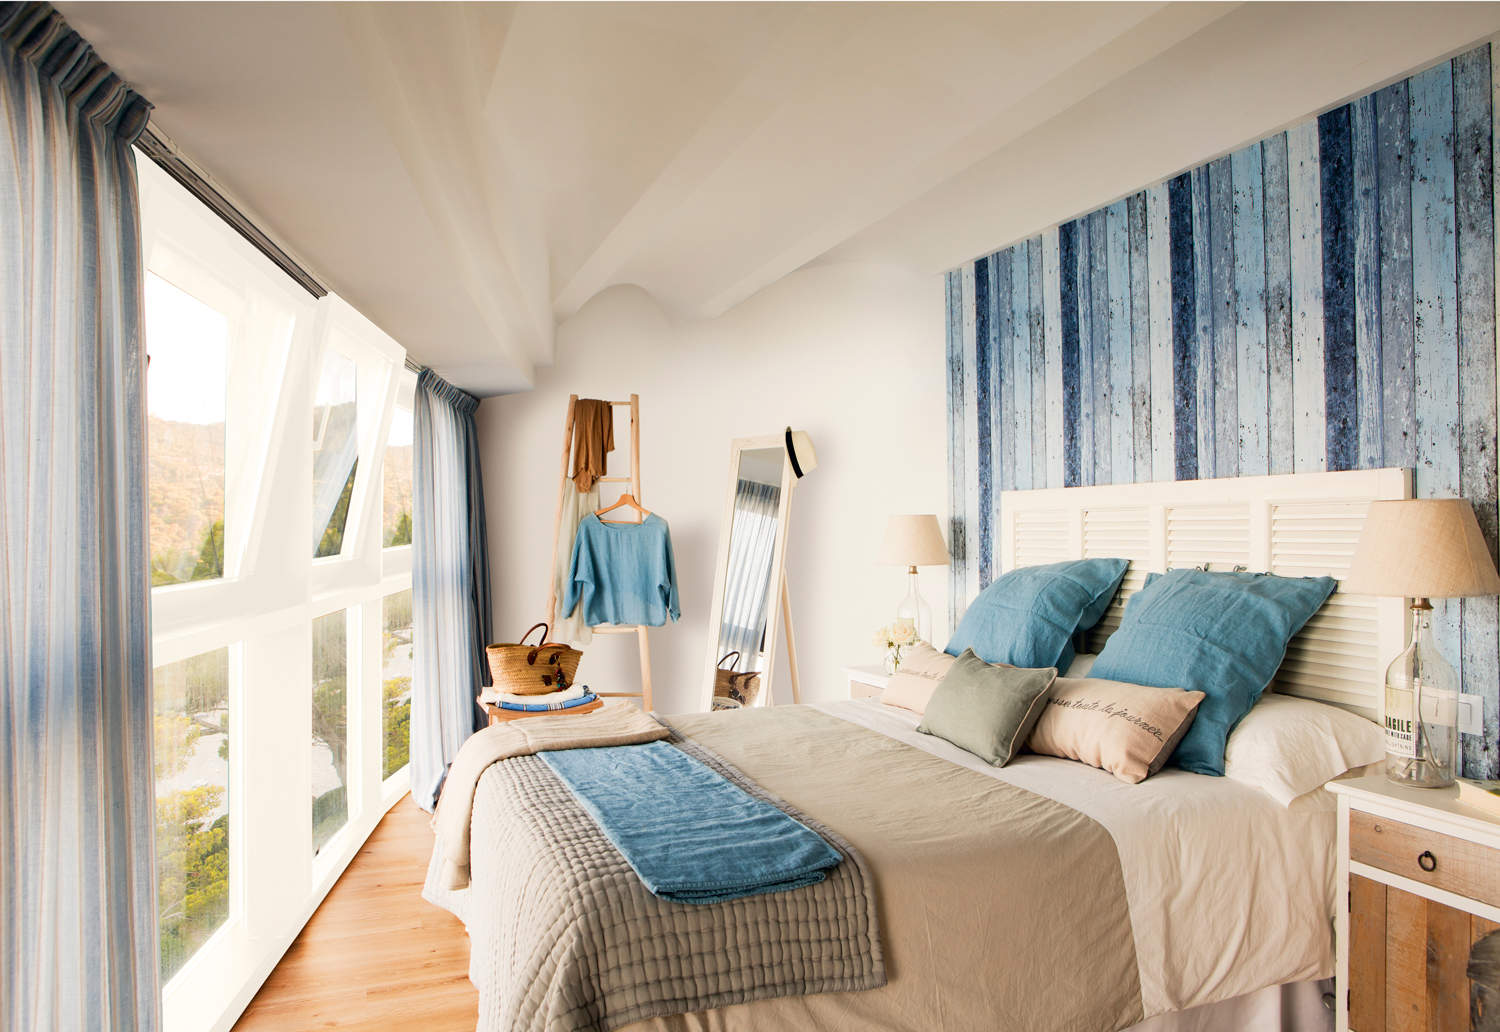 Dormitorio decorado en blanco, beige y azul 00409306 b6ee1512